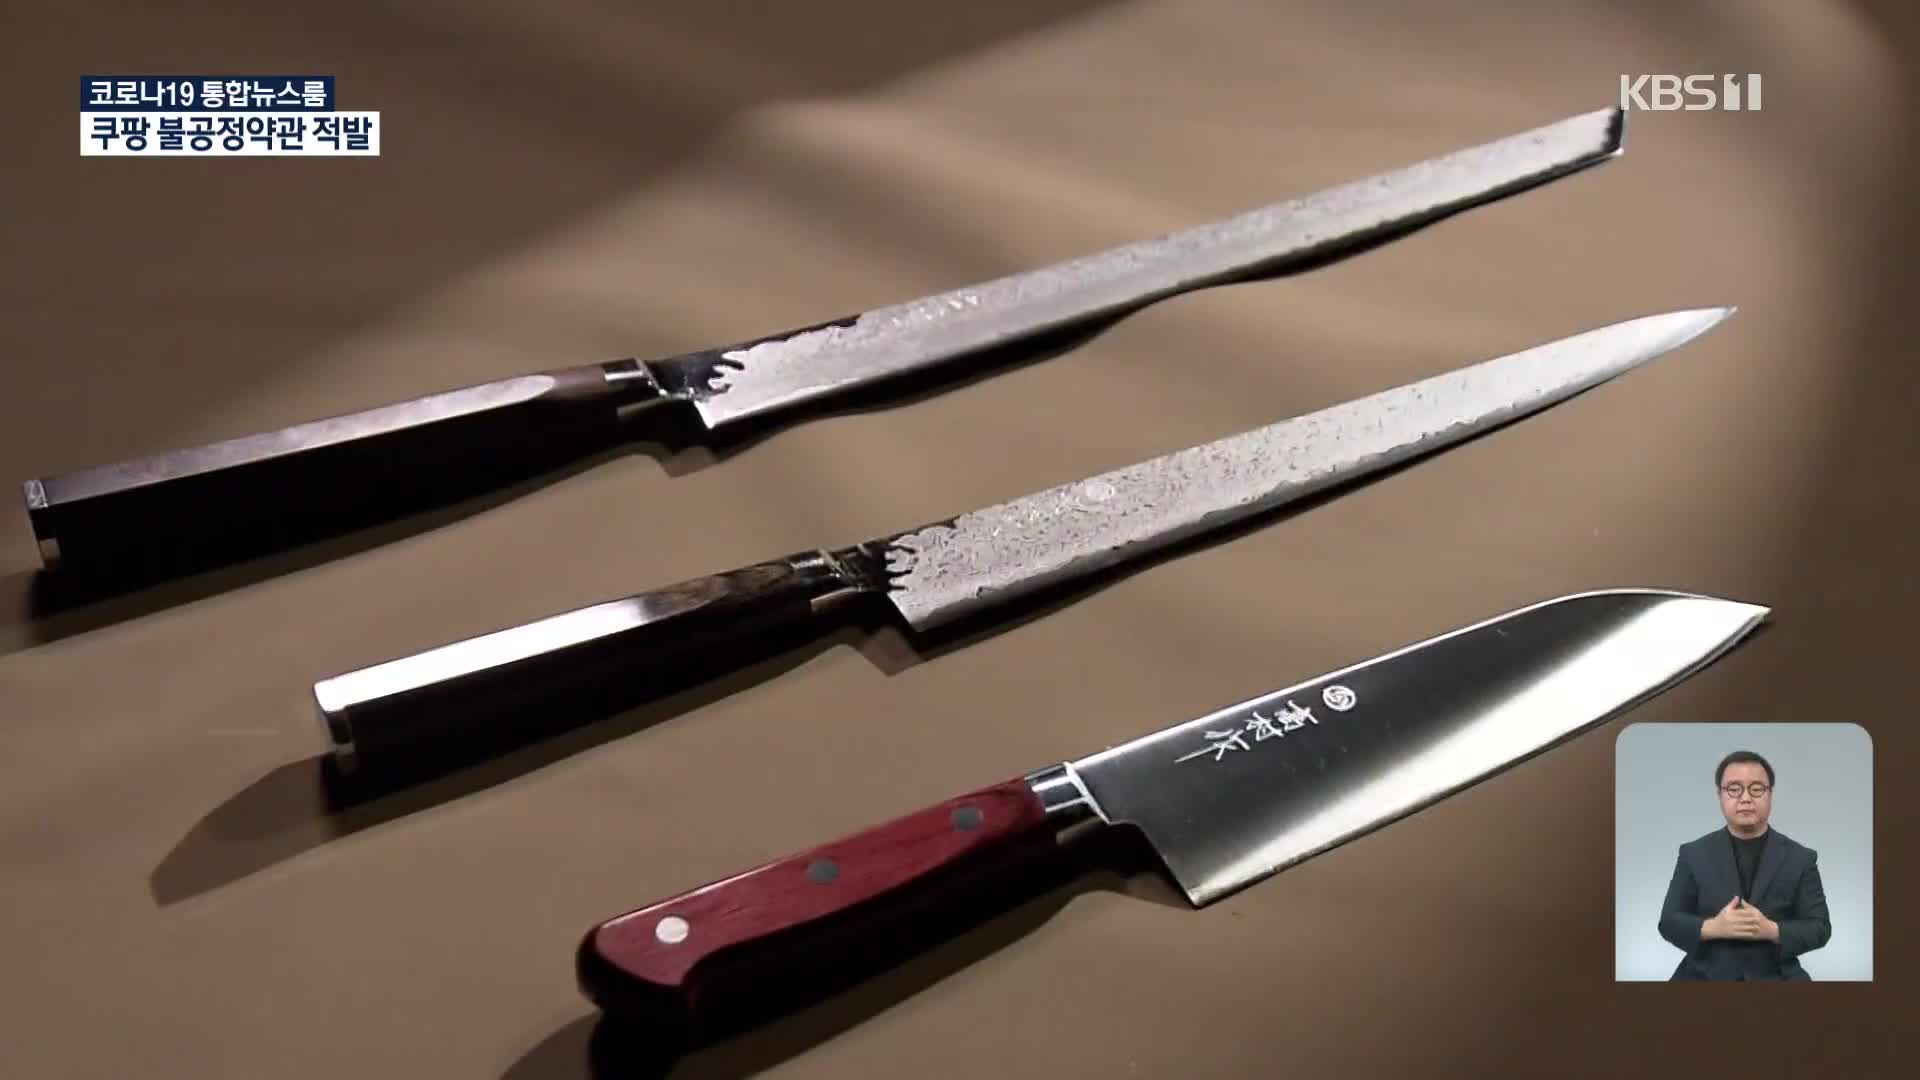 일본 장인 3형제가 만든 명품 칼